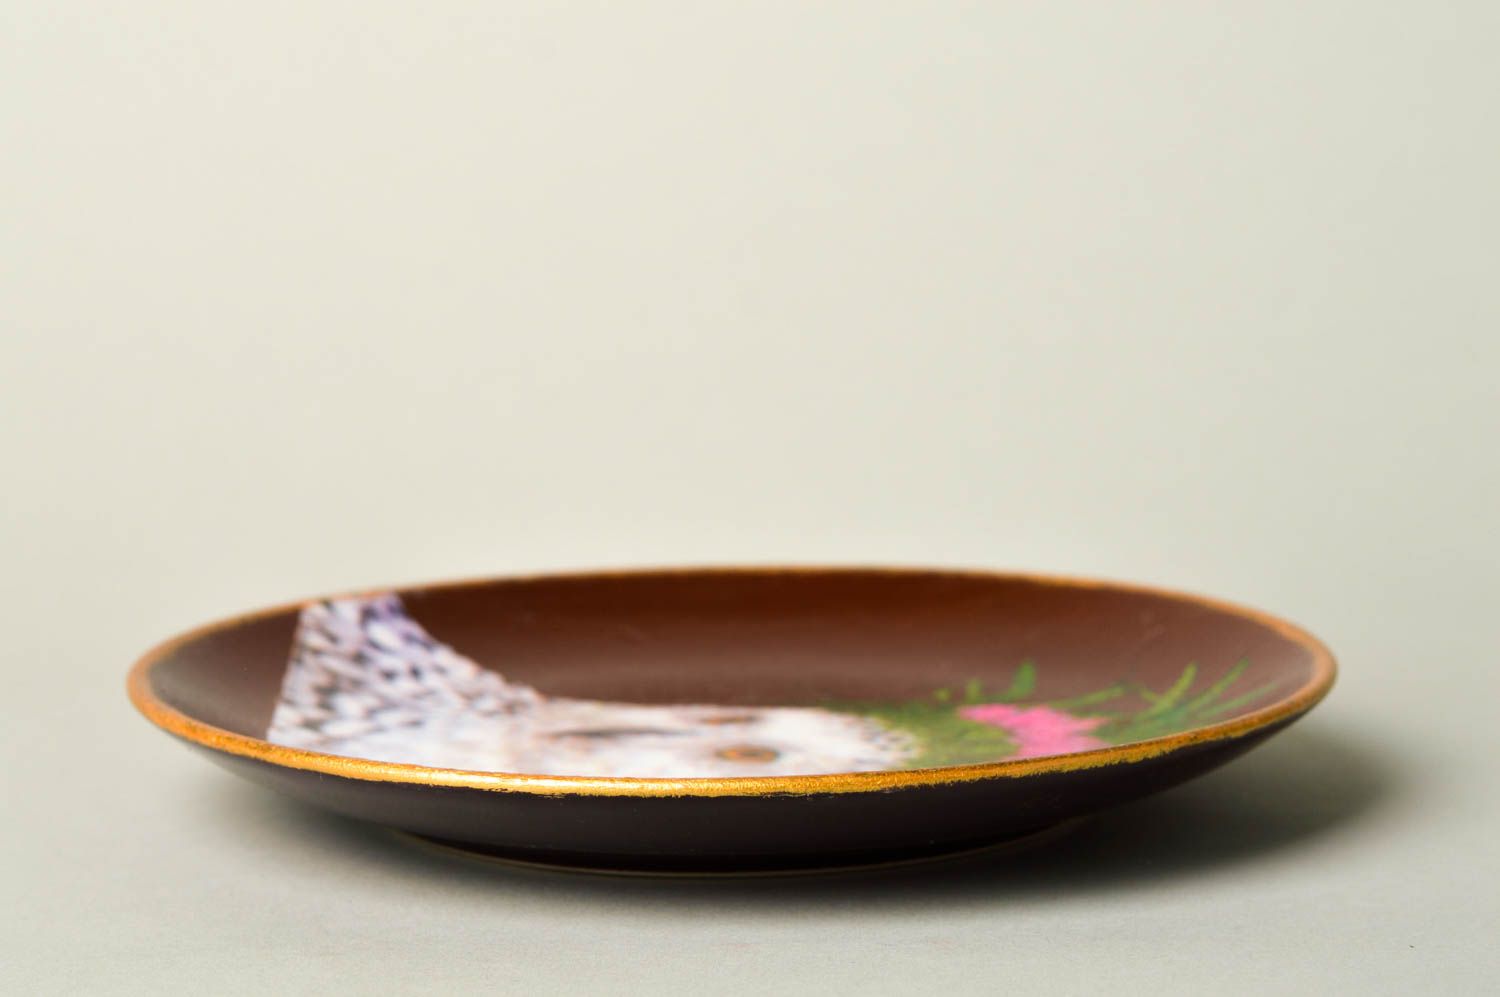 Plato de cerámica artesanal pintado utensilio de cocina menaje del hogar foto 2